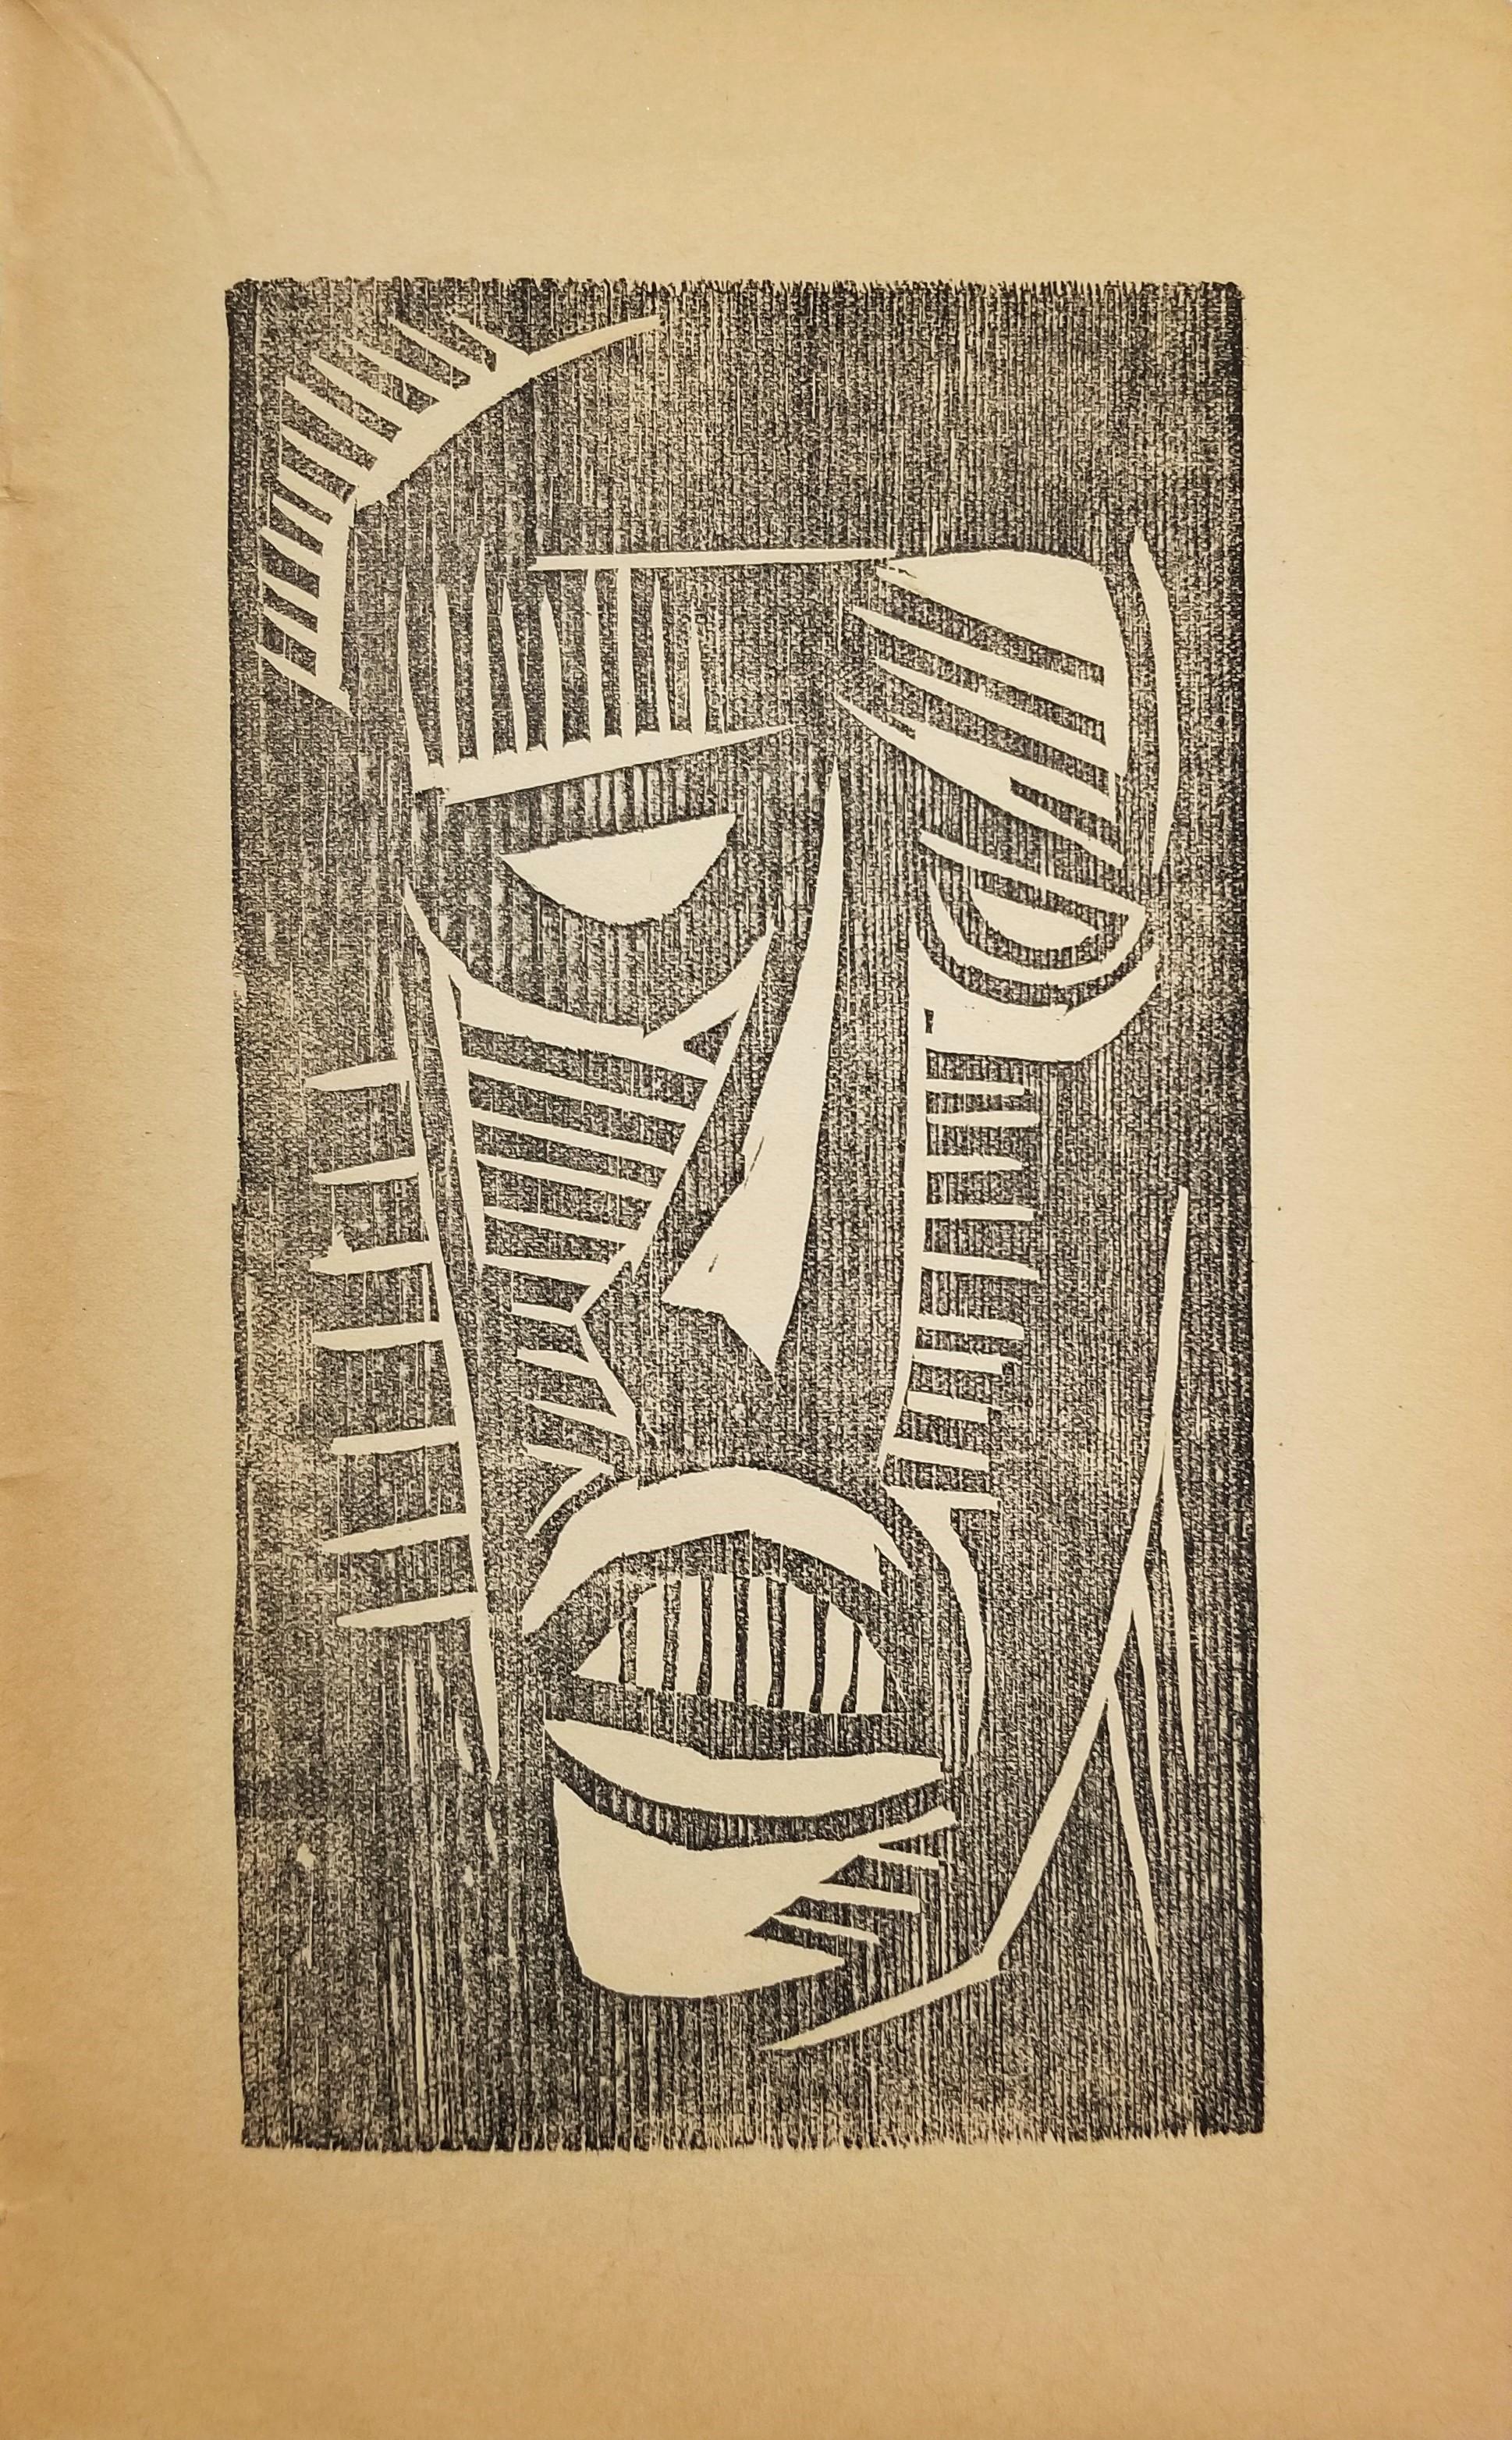 Männlicher Kopf von vorn (Male Head from the Front) /// German Expressionism  - Print by Karl Schmidt-Rottluff